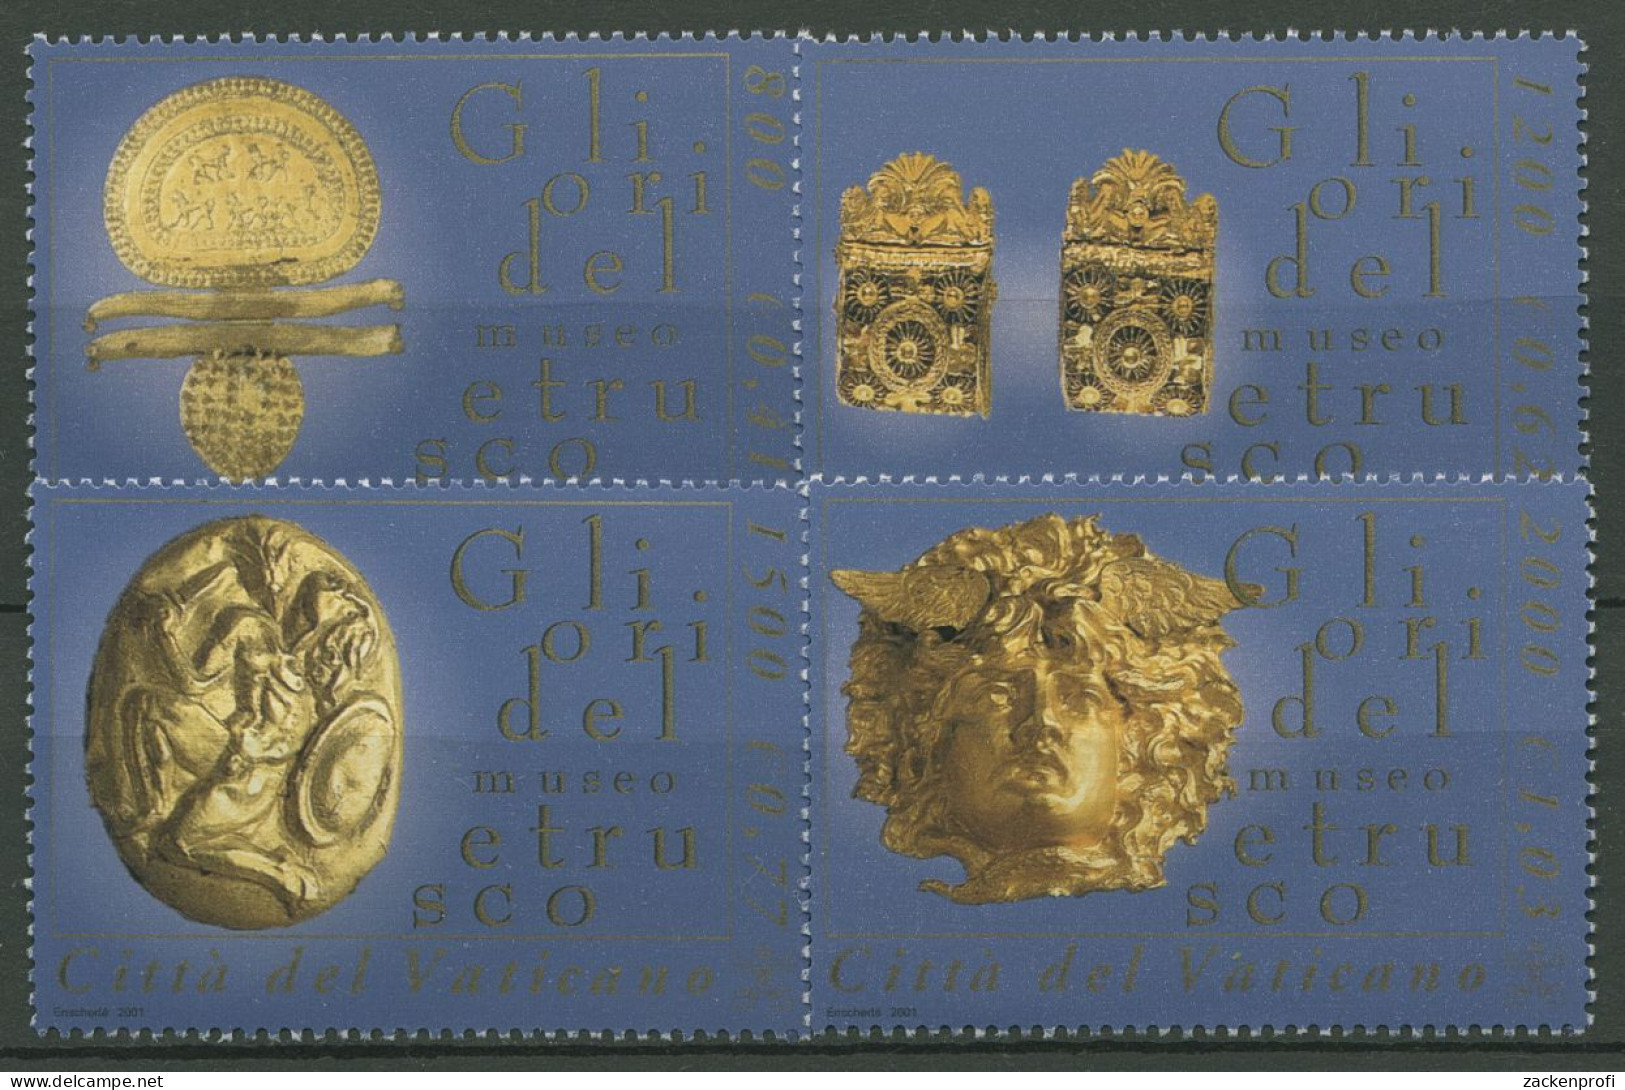 Vatikan 2001 Etruskisches Museum Goldexponate 1386/89 Postfrisch - Ungebraucht